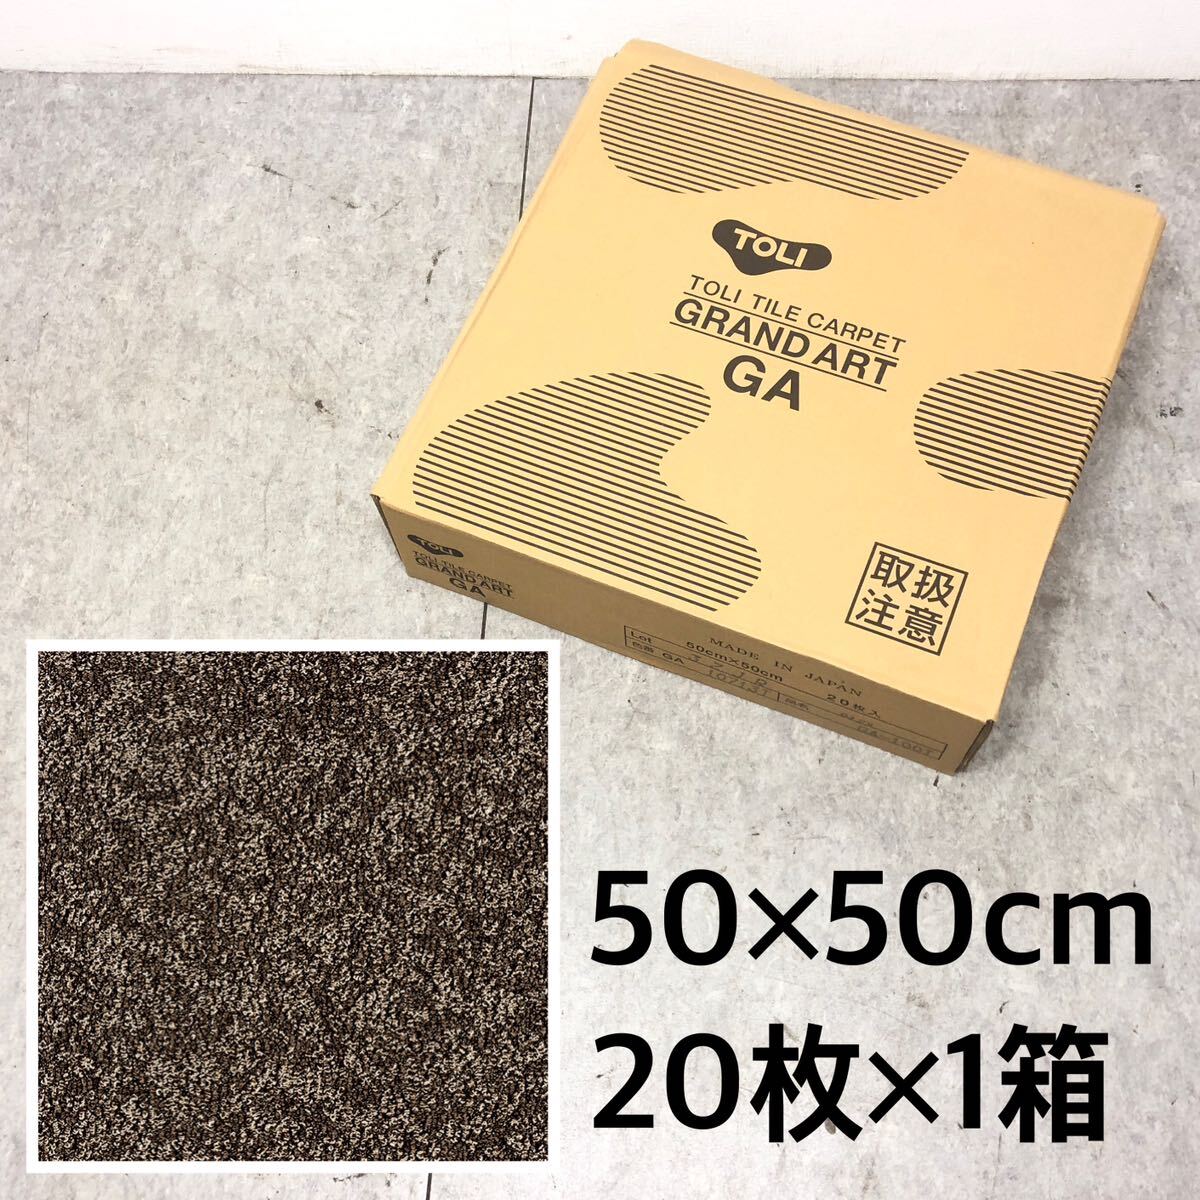 □未使用 TOLI 東リ タイルカーペット GA-100T シャインマーブル GA10713T 50×50cm 20枚 1箱 グランドアート 日本製 床材 ラグ □24042911_画像1